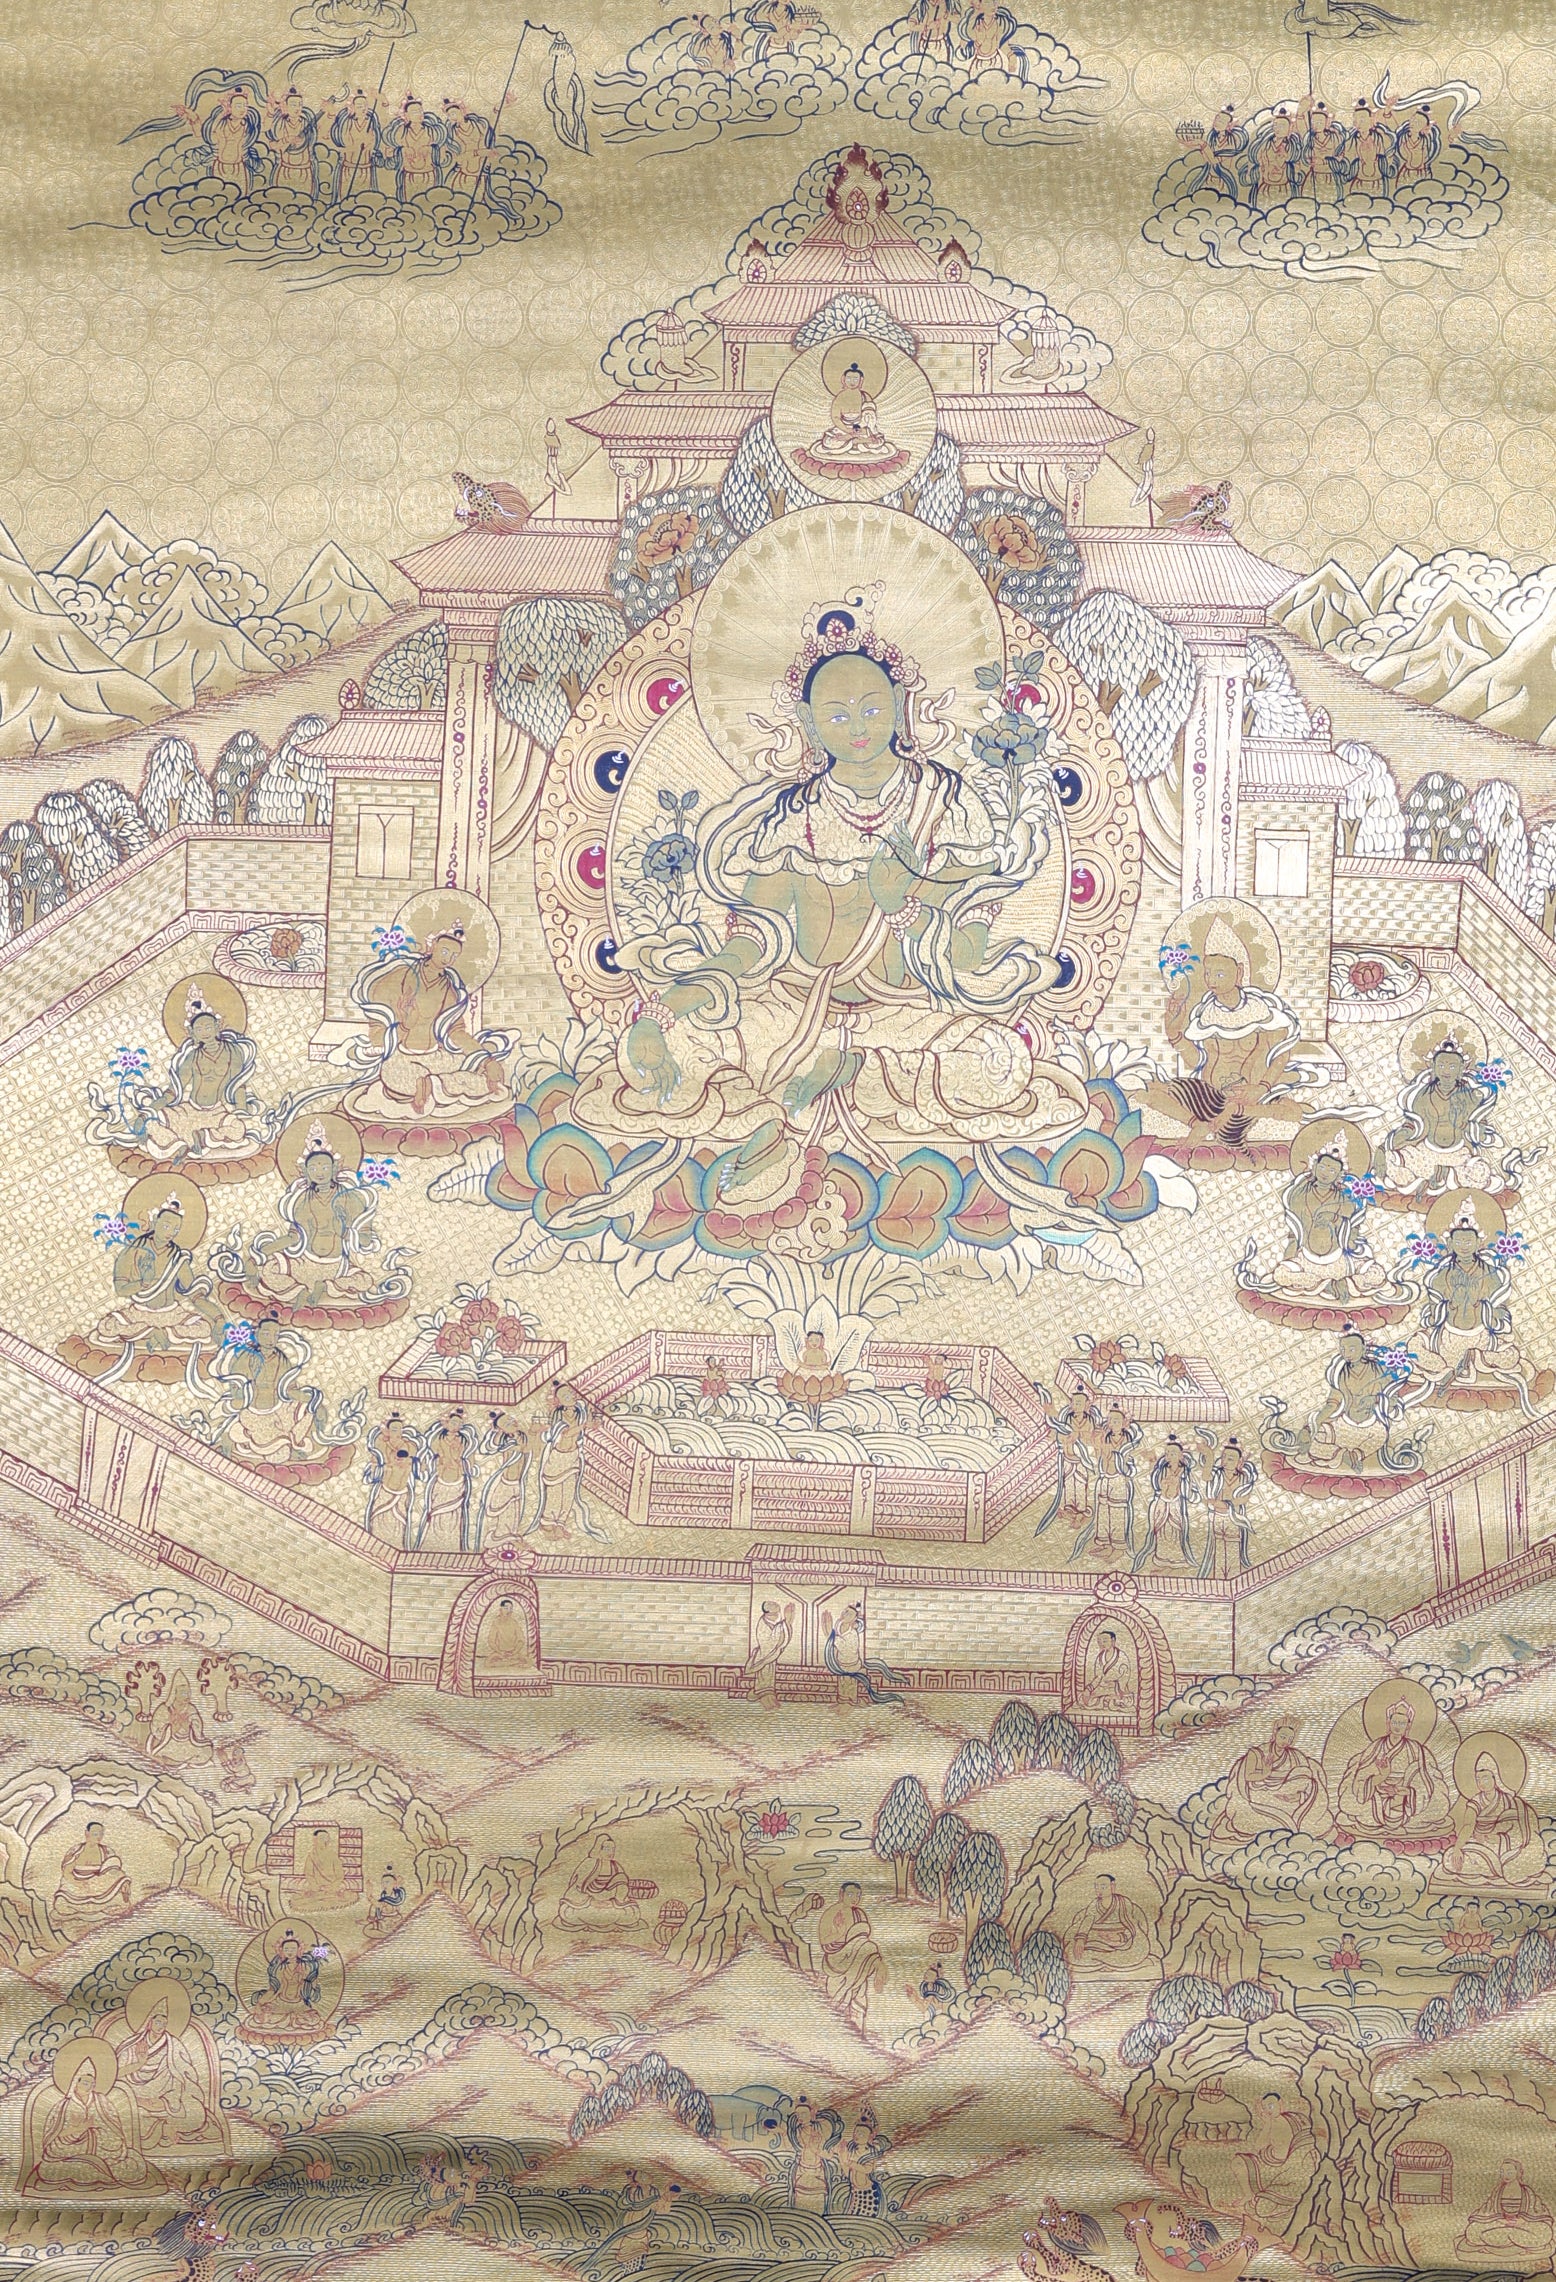 Green Tara Thangka Painting for rituals, meditations, and prayers.